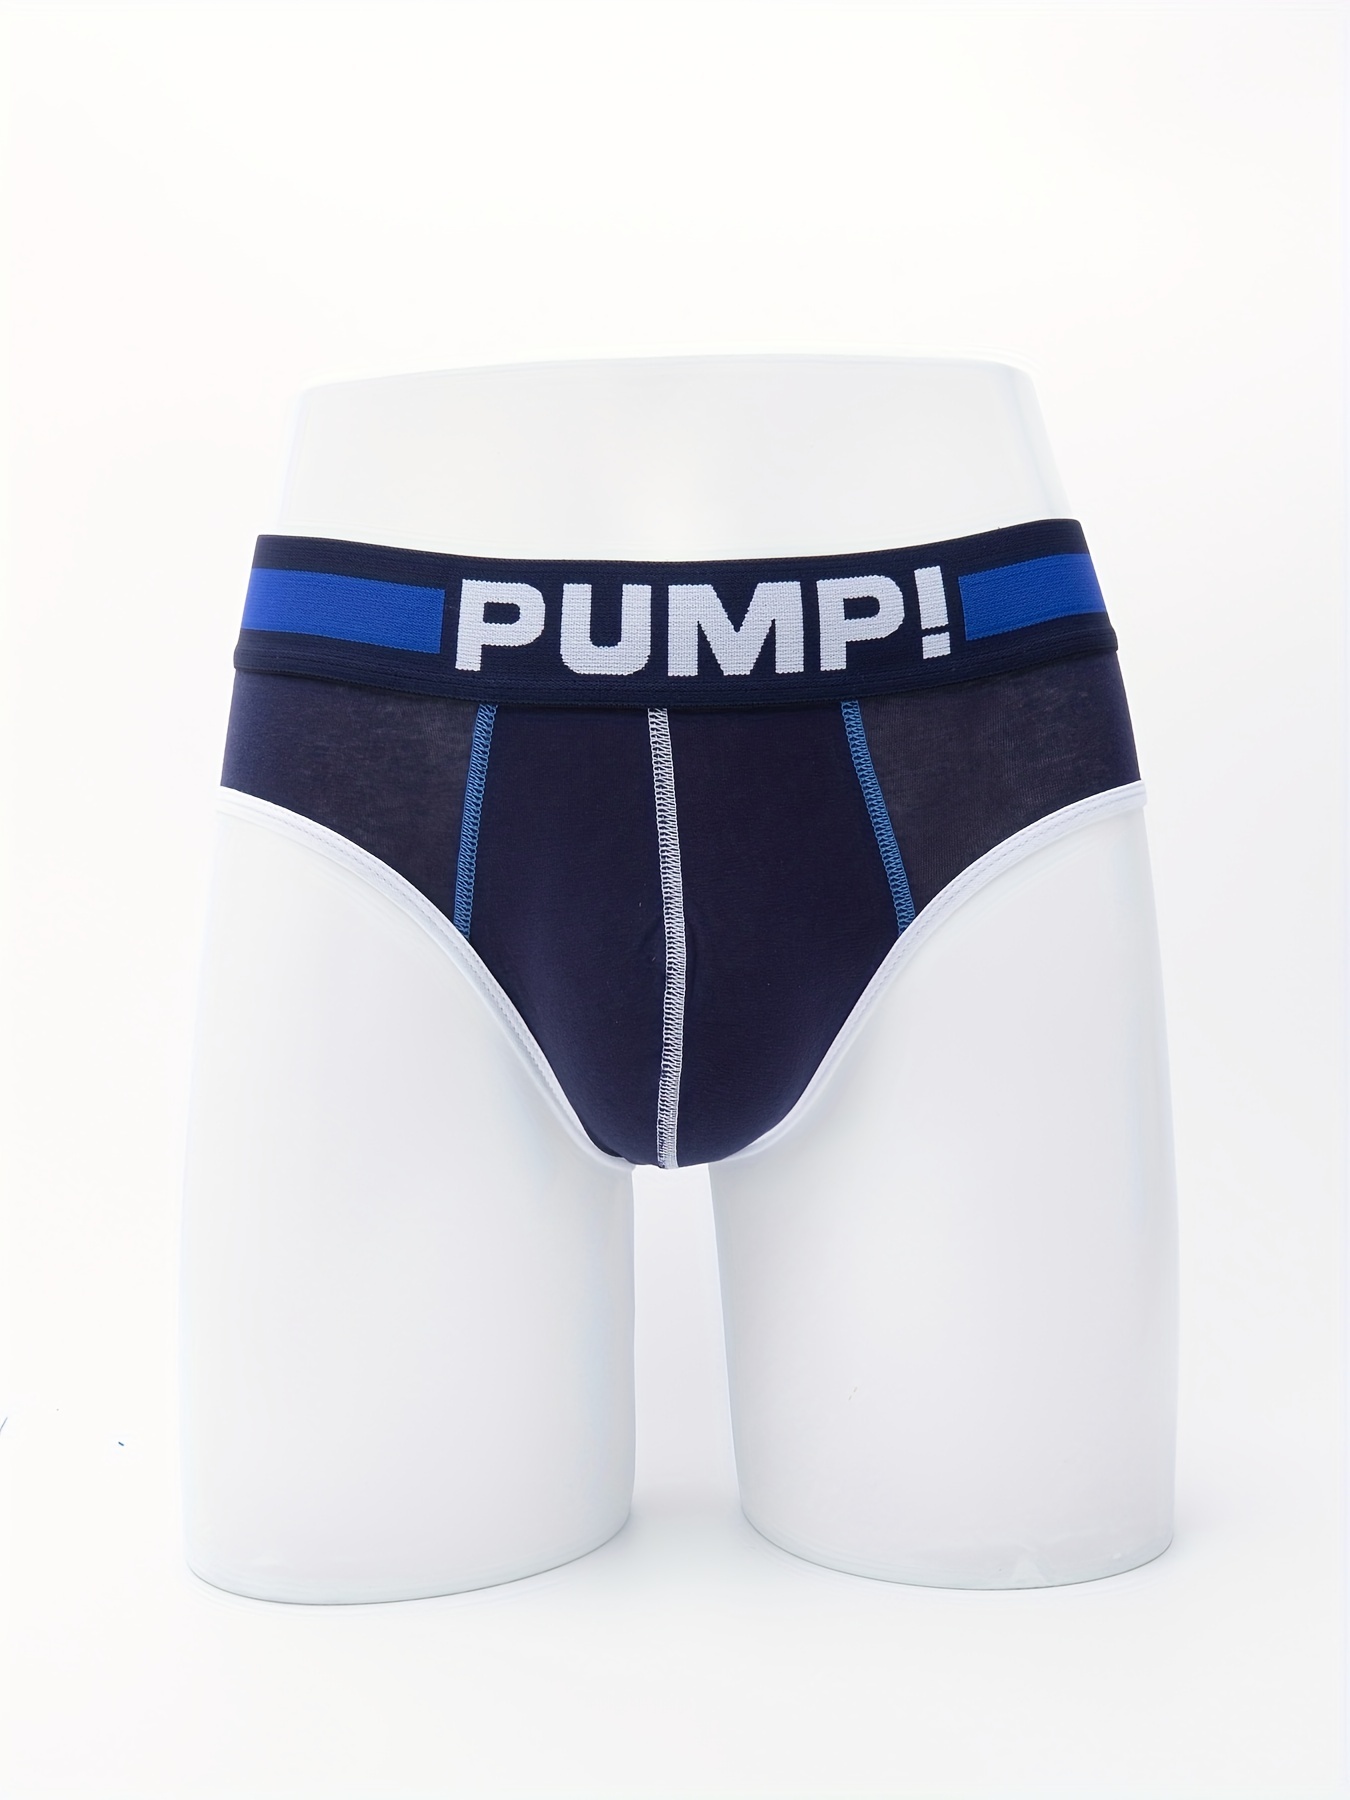 Coral Waterbrief – PUMP! Underwear